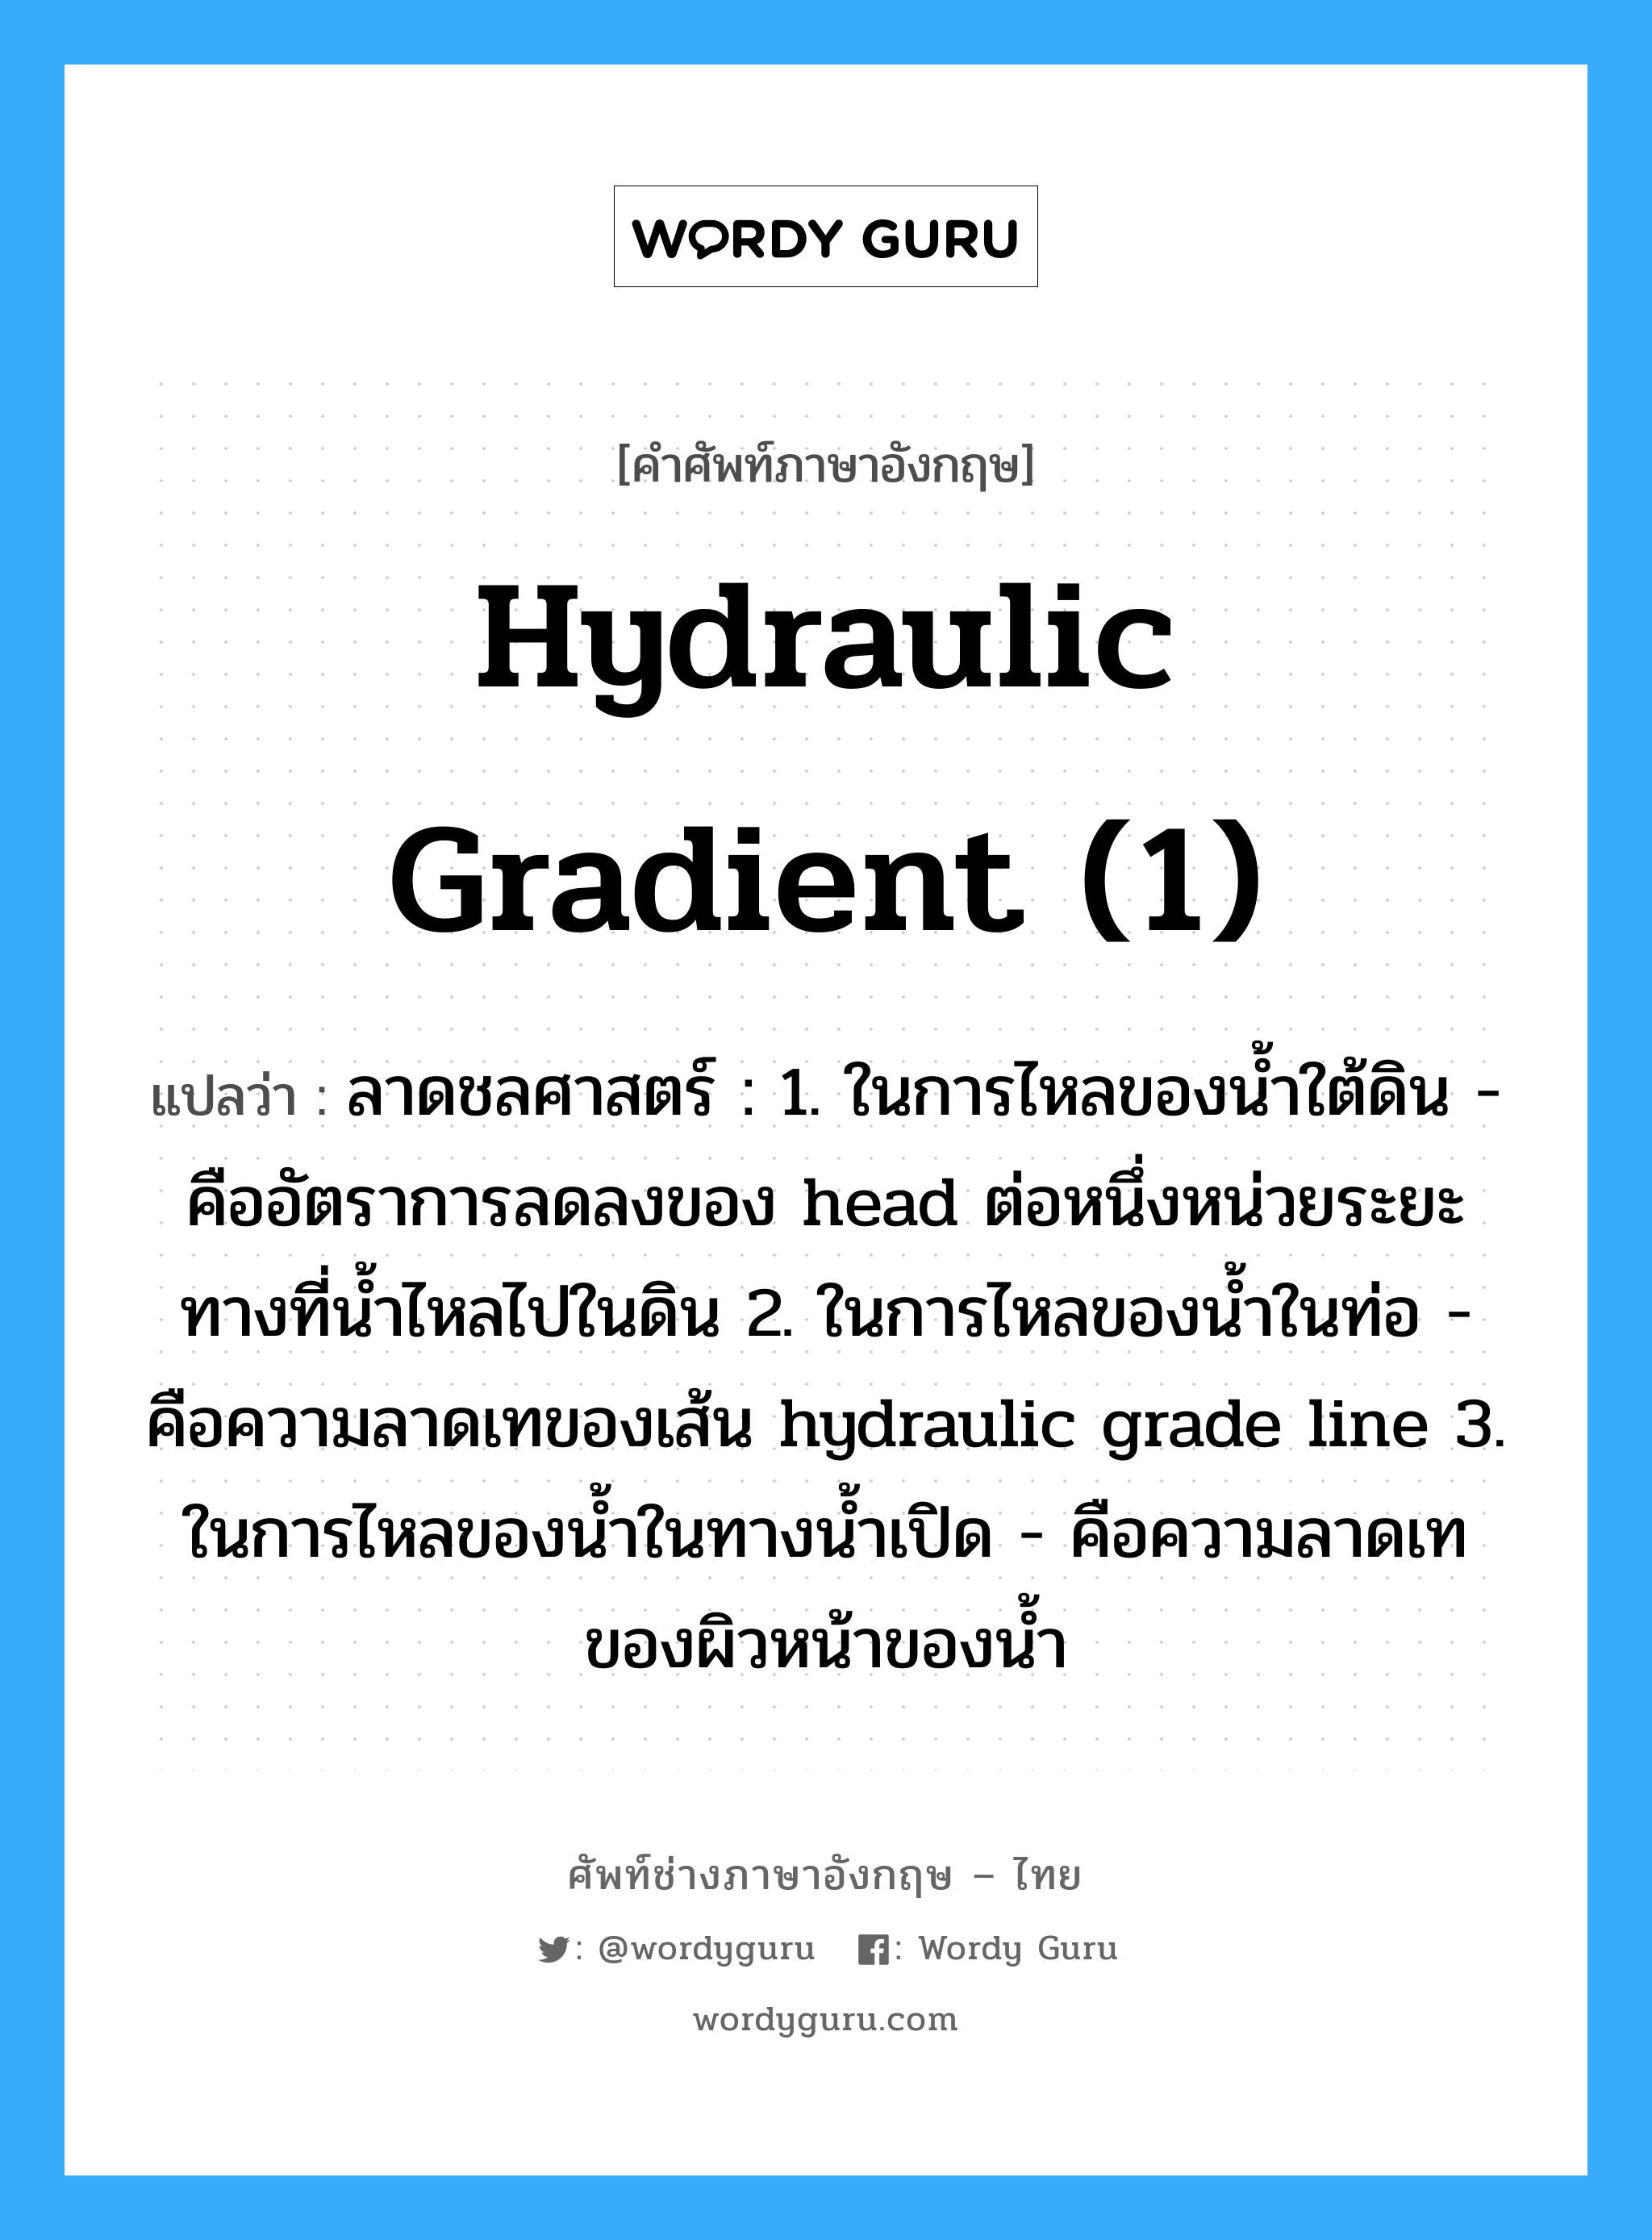 hydraulic gradient (1) แปลว่า?, คำศัพท์ช่างภาษาอังกฤษ - ไทย hydraulic gradient (1) คำศัพท์ภาษาอังกฤษ hydraulic gradient (1) แปลว่า ลาดชลศาสตร์ : 1. ในการไหลของน้ำใต้ดิน - คืออัตราการลดลงของ head ต่อหนึ่งหน่วยระยะทางที่น้ำไหลไปในดิน 2. ในการไหลของน้ำในท่อ - คือความลาดเทของเส้น hydraulic grade line 3. ในการไหลของน้ำในทางน้ำเปิด - คือความลาดเทของผิวหน้าของน้ำ